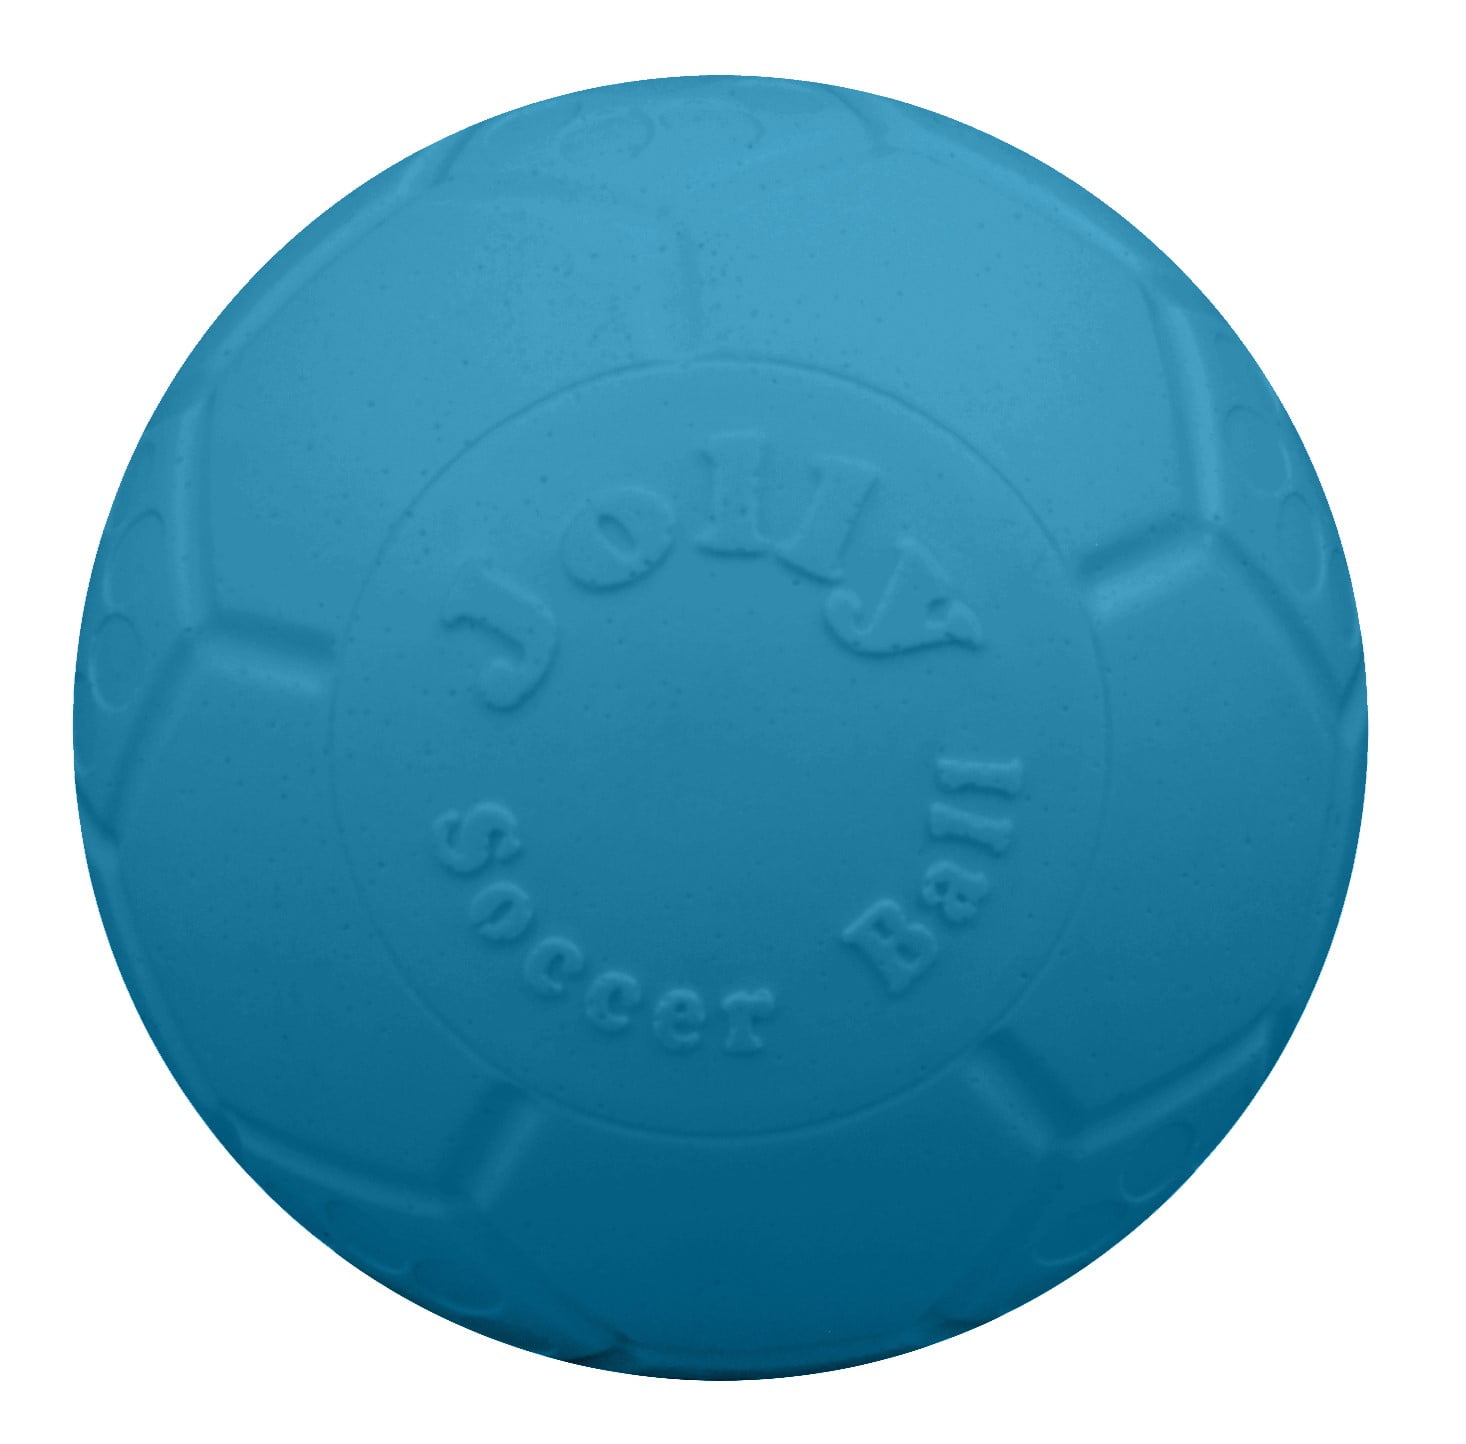 Jb72062 6 In. Jolly Soccer Ball, Ocean Blue